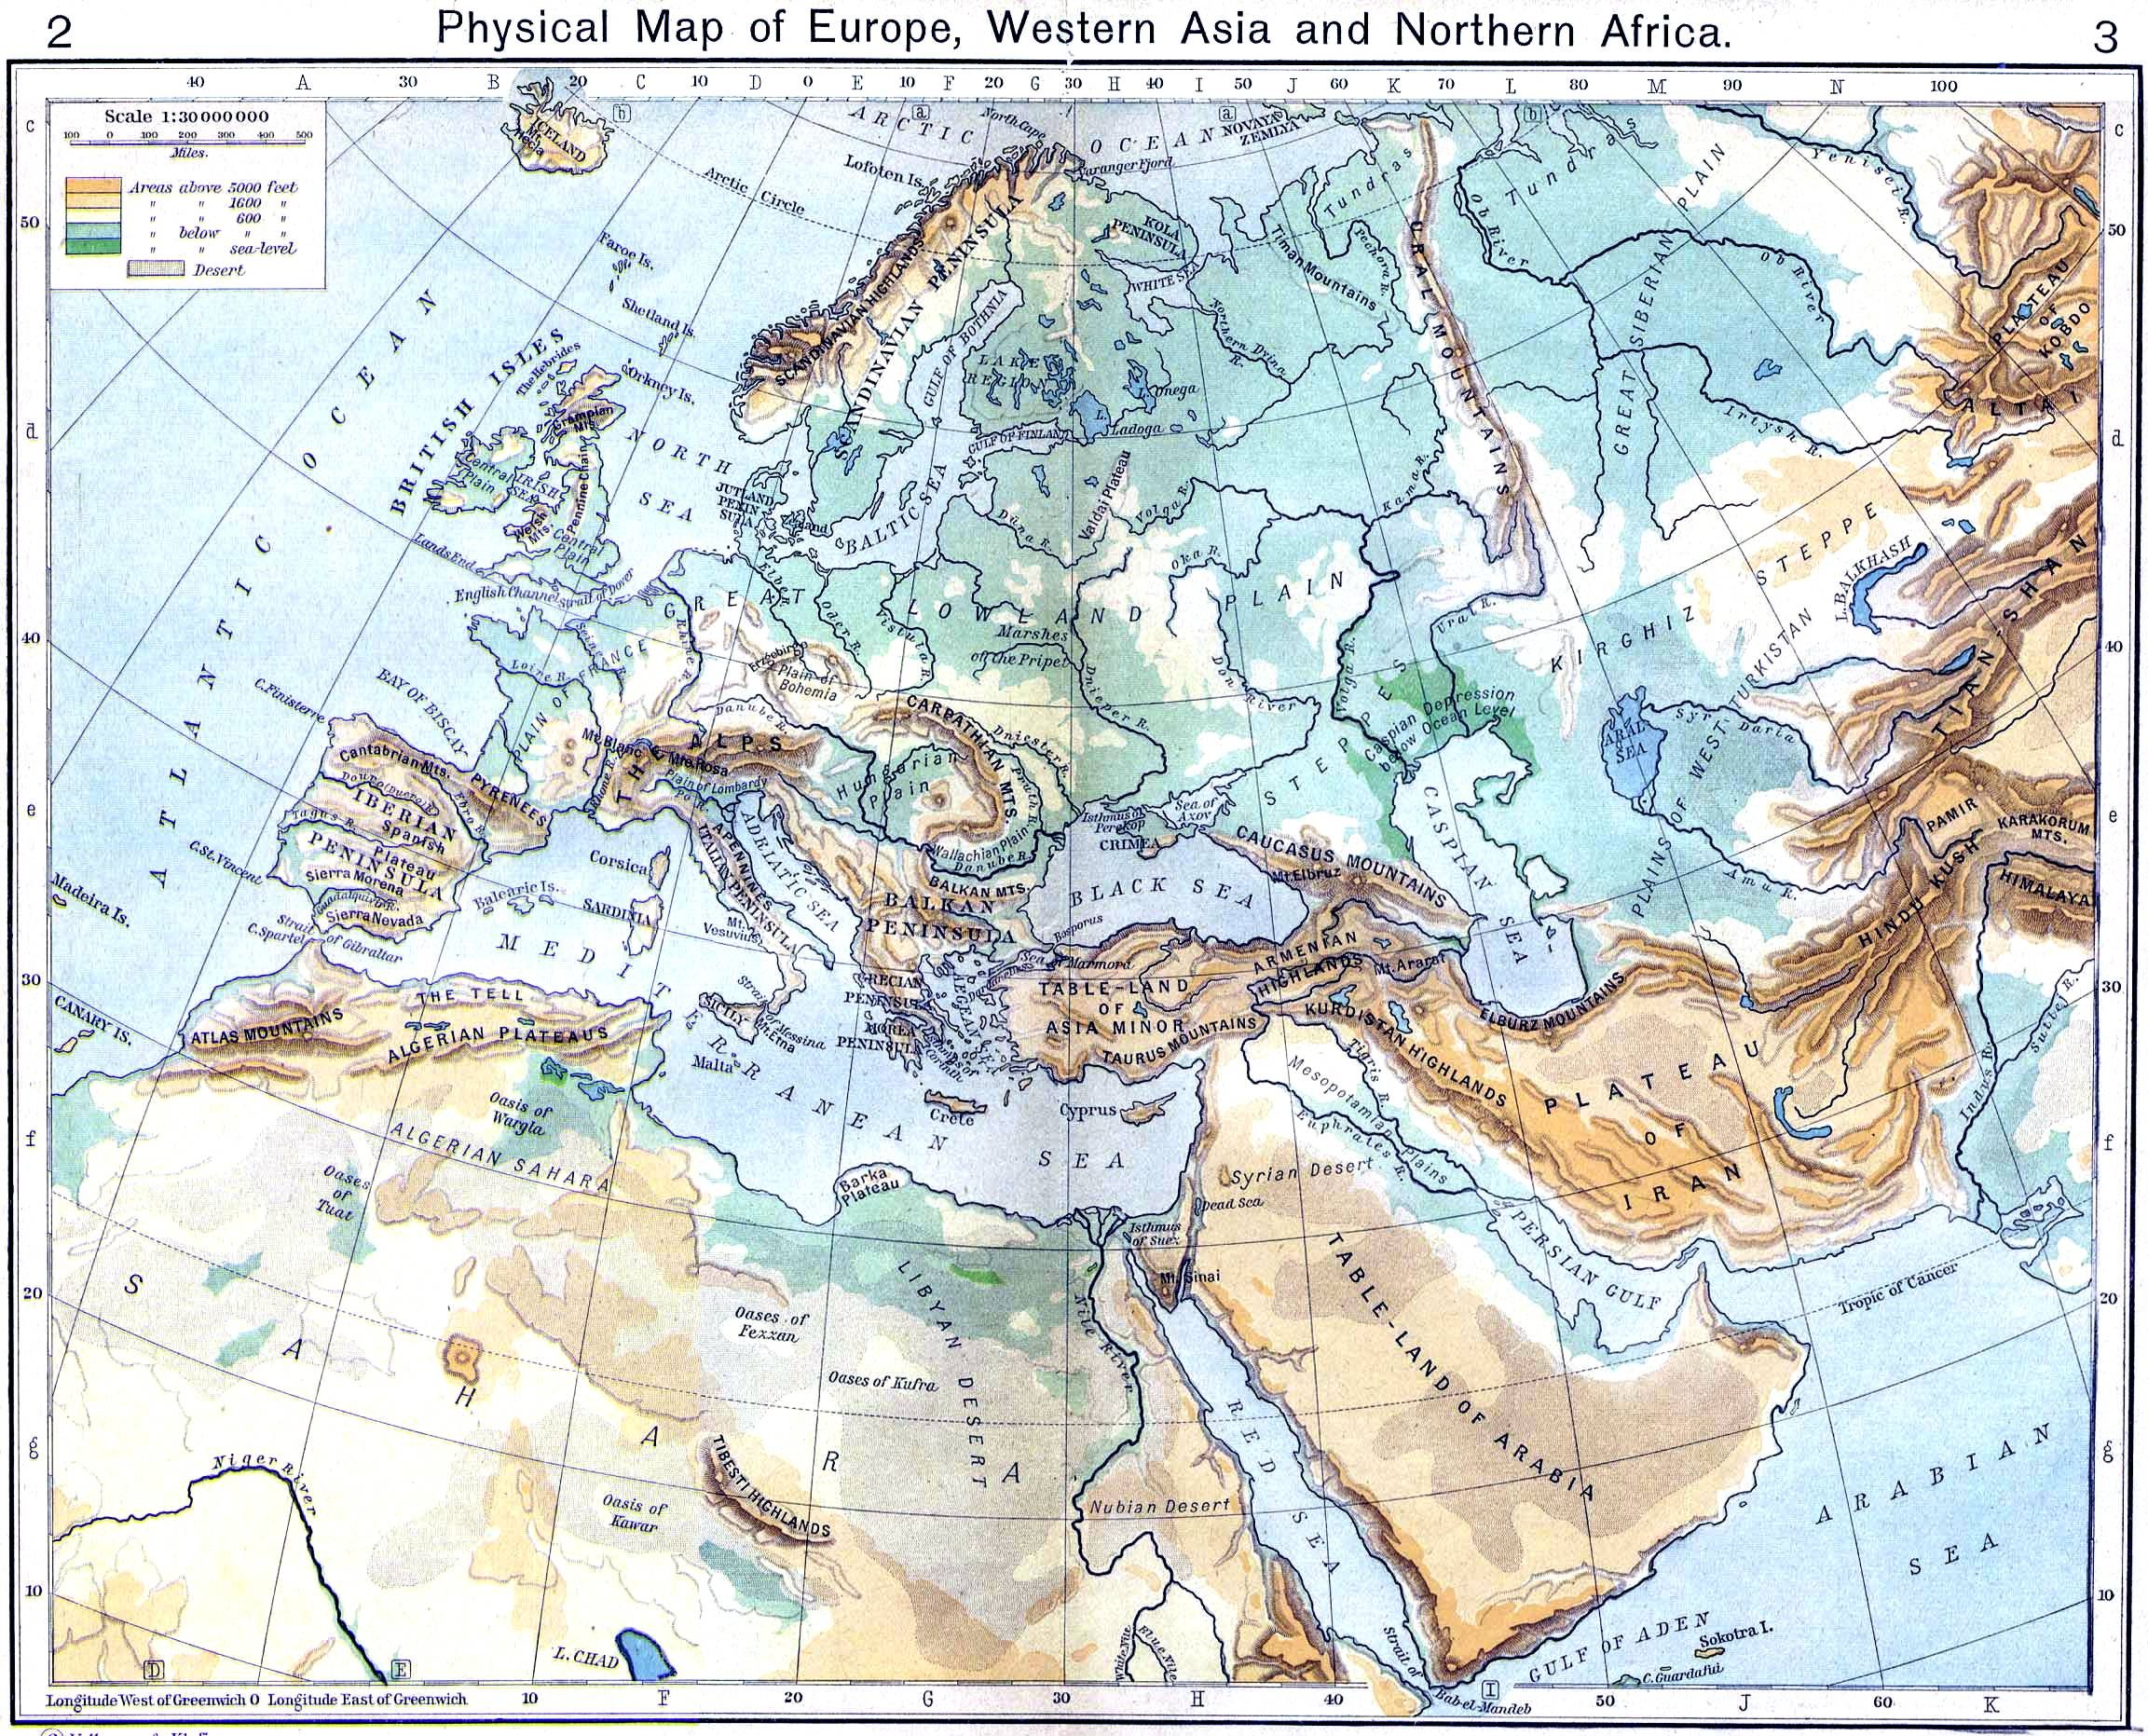 Mapa Físico de Europa, Asia occidental y África del Norte - Tamaño ...